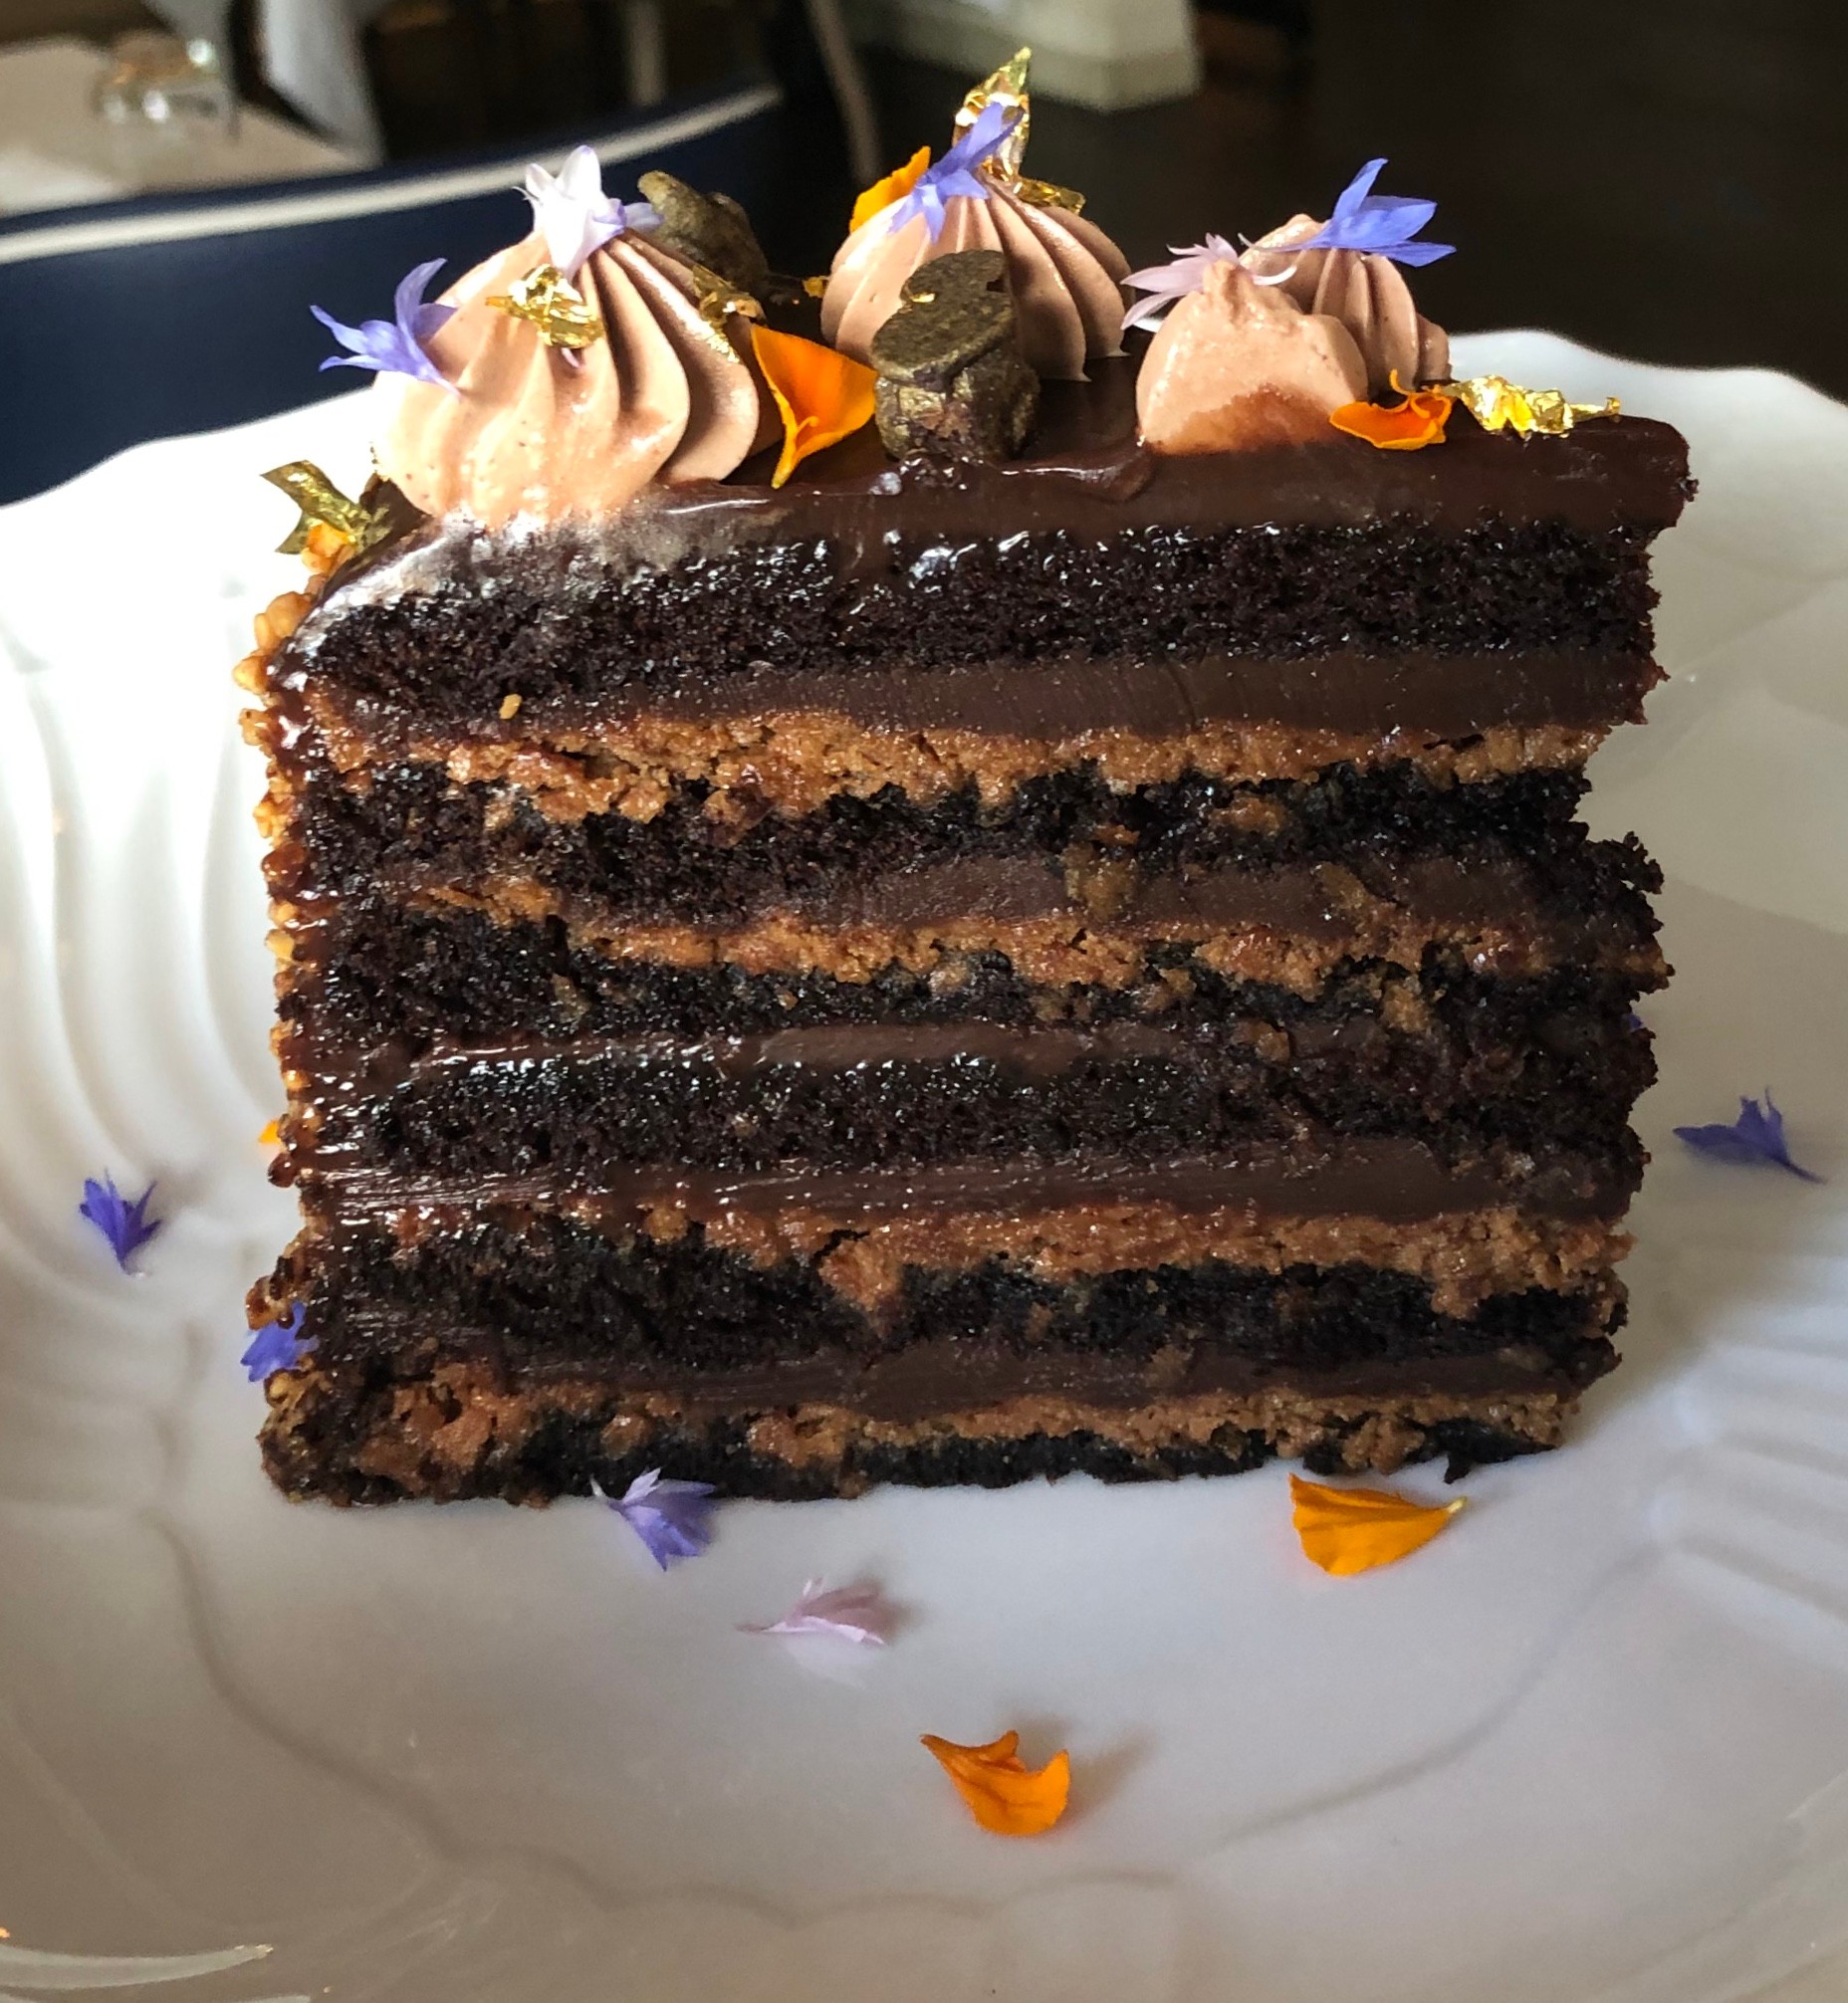 Grand Chocolate Cake "Piemontese Style" (Serves 2+)